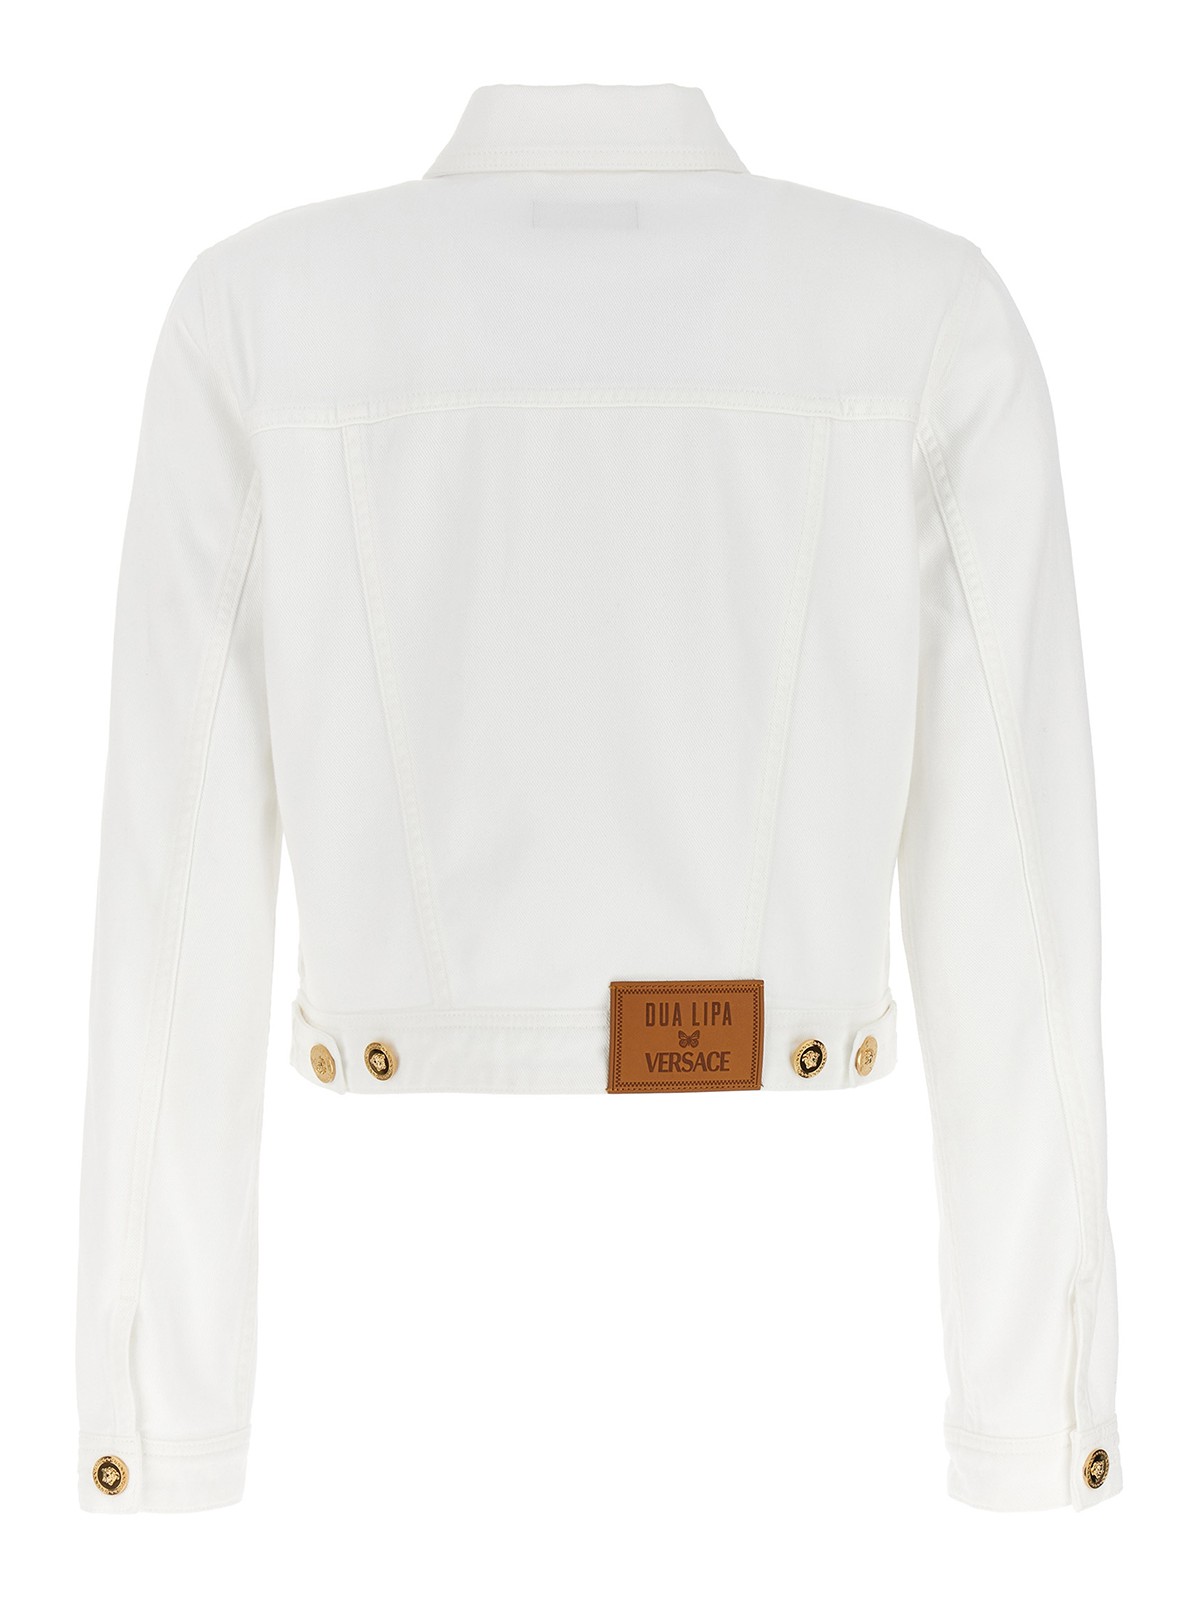 Buy Women White Boxy Denim Jacket Online At Best Price - Sassafras.in